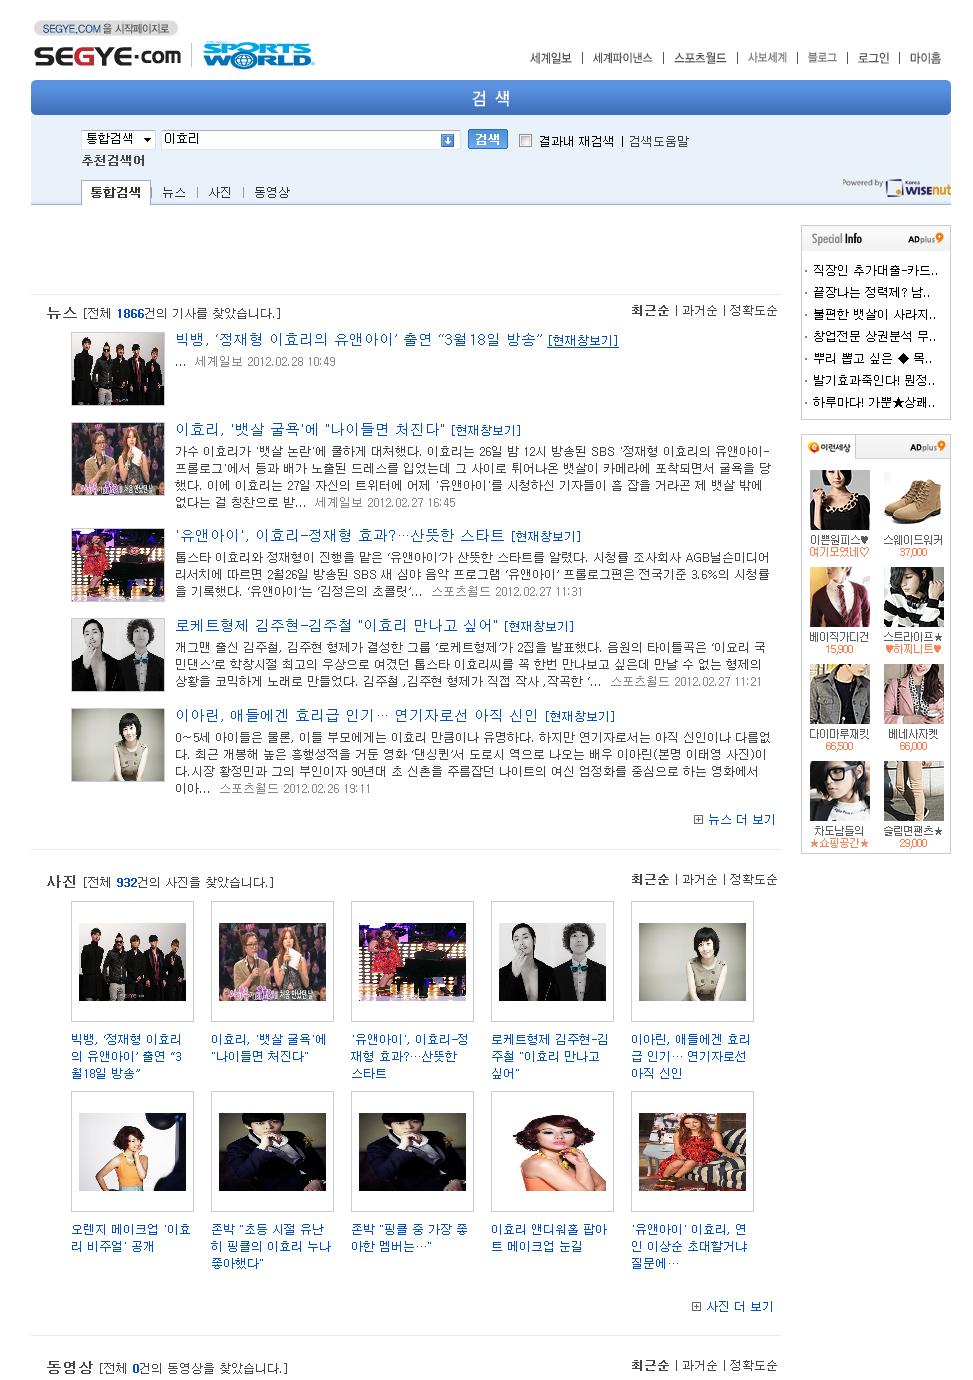 스페셜인포 샵플러스 세계일보